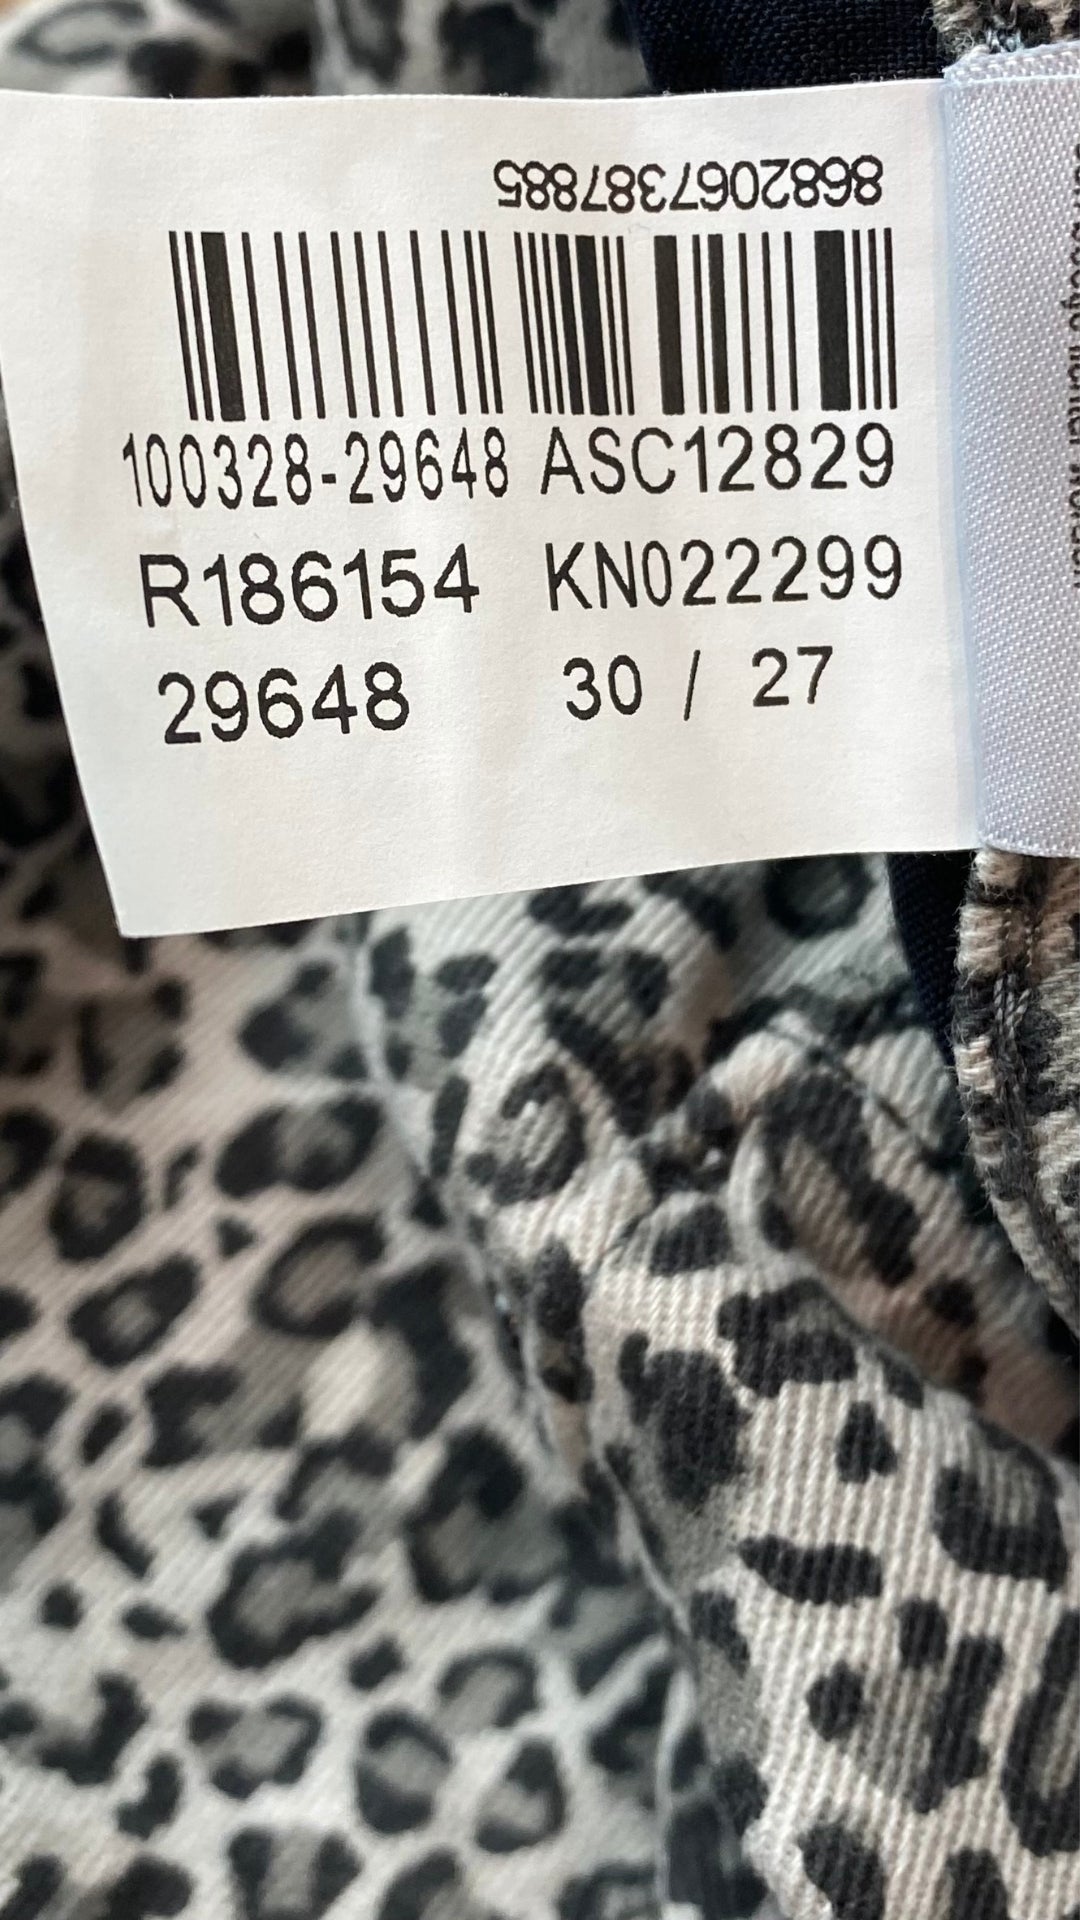 Pantalon denim coupe jeans étroit à motif léopard Mavi taille 30. Vue de l'étiquette de taille.